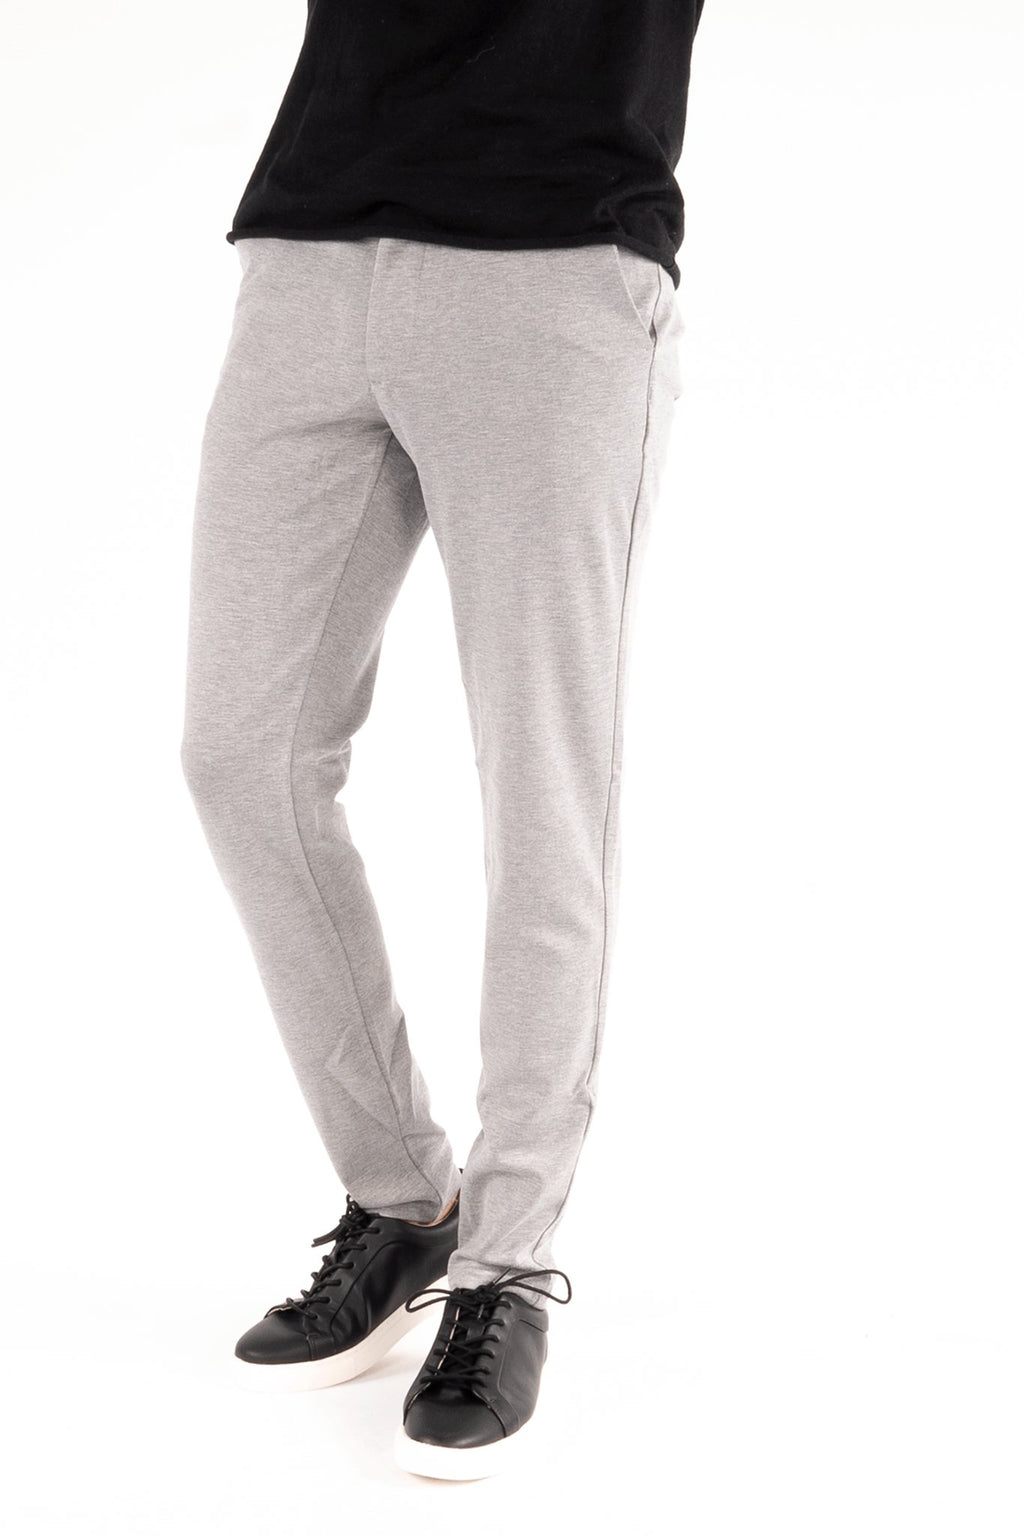 Pantaloni da jogging per le prestazioni - grigio chiaro